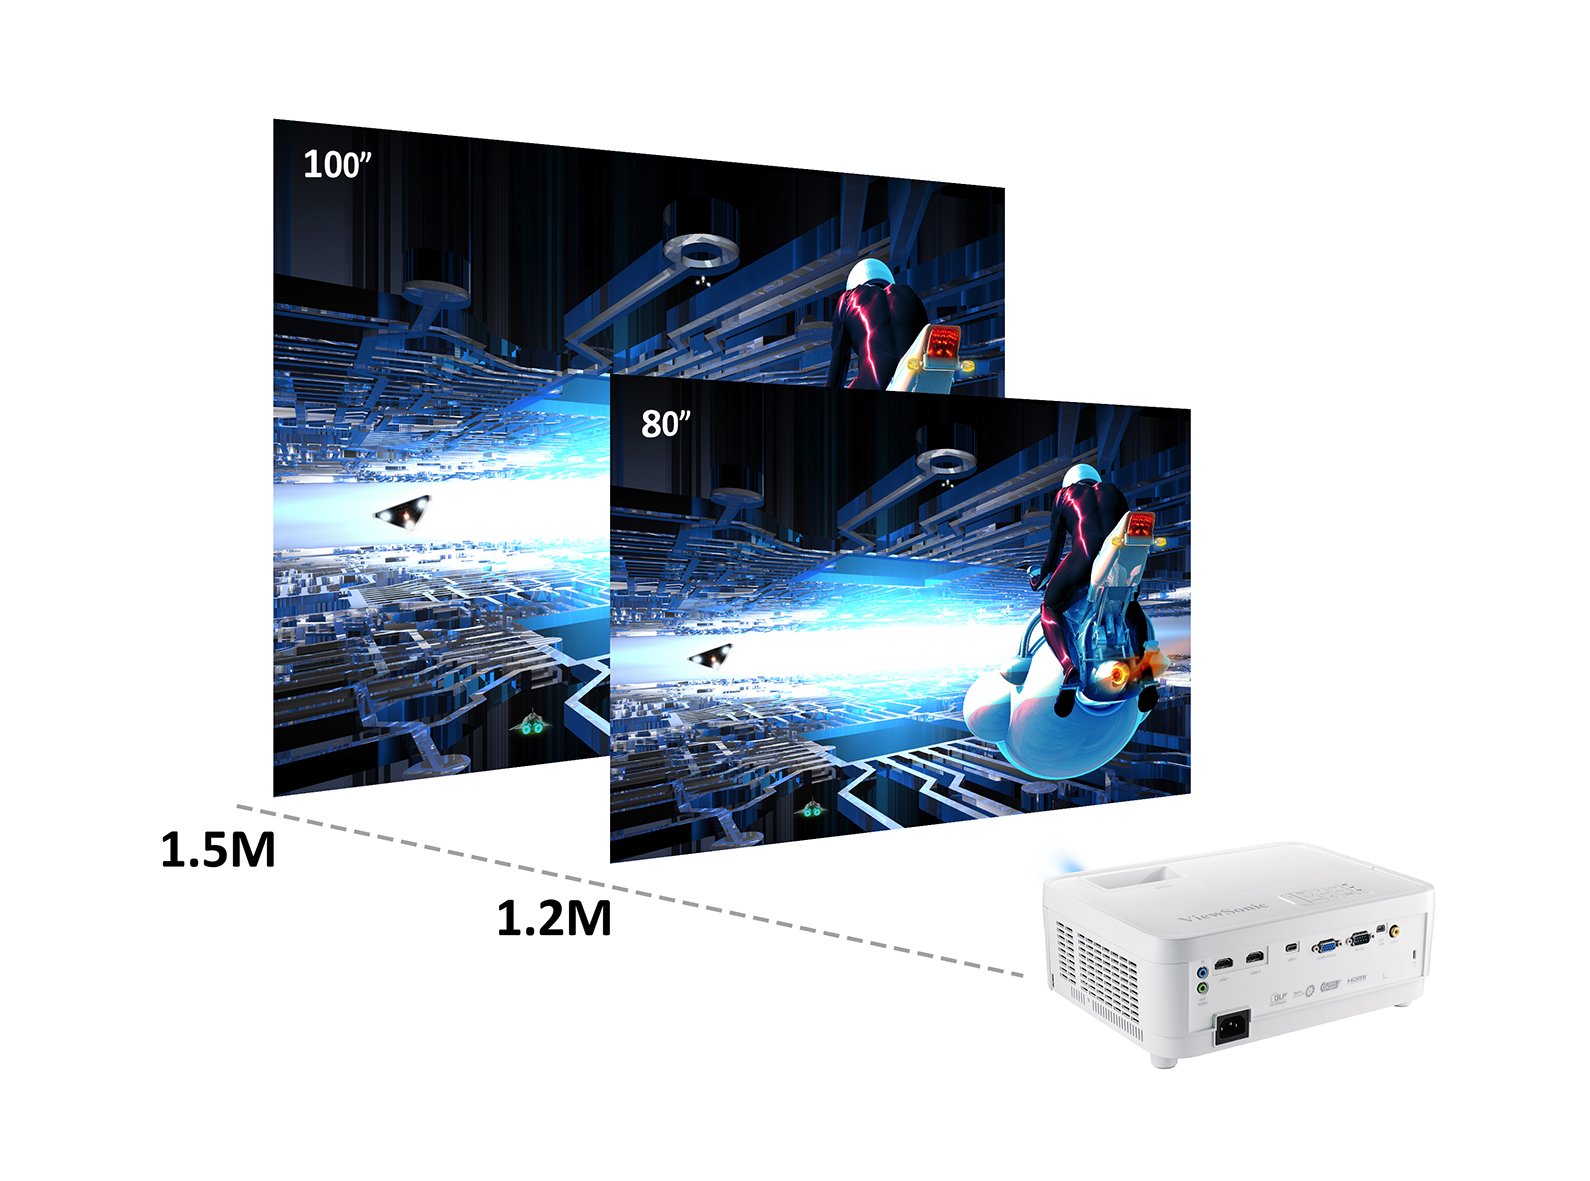 ViewSonic PX706HD フルHD短焦点プロジェクター - 映像機器